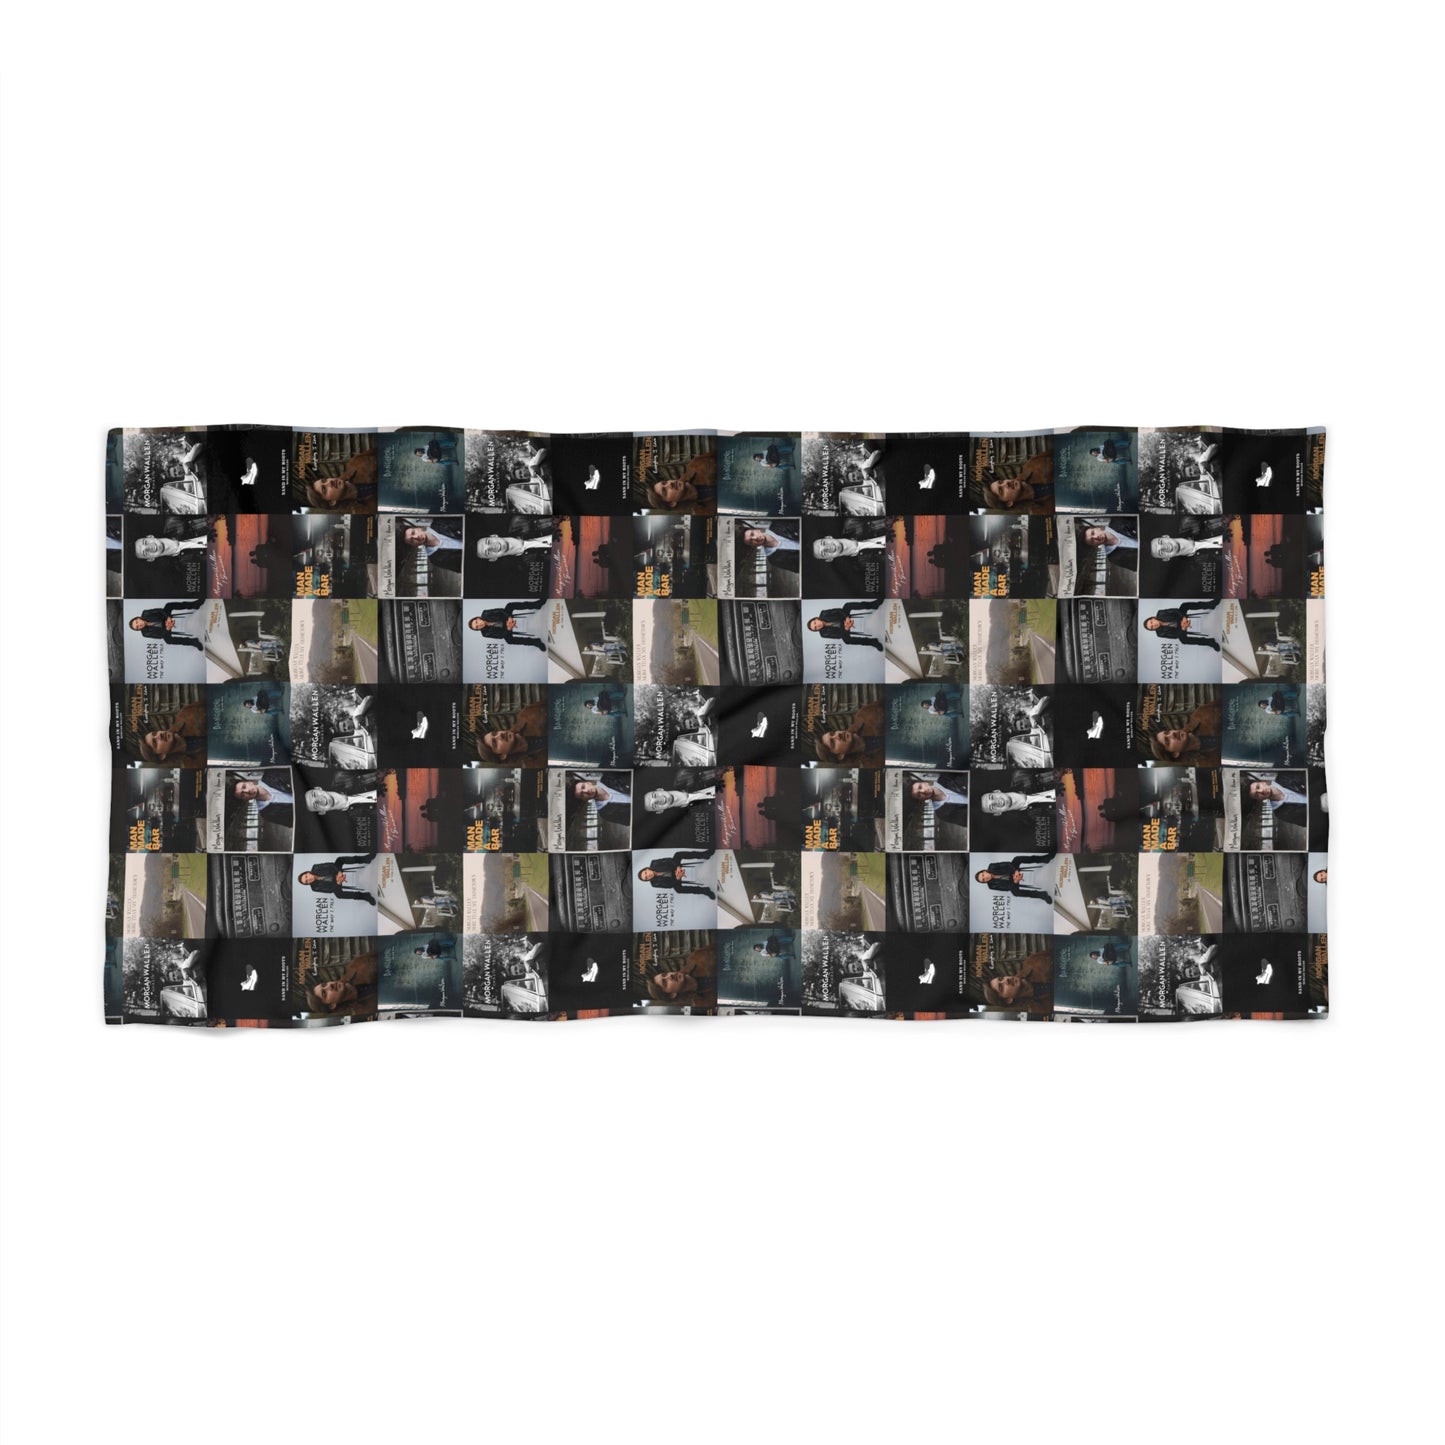 Morgan Wallen Album Cover Collage Beach Towel